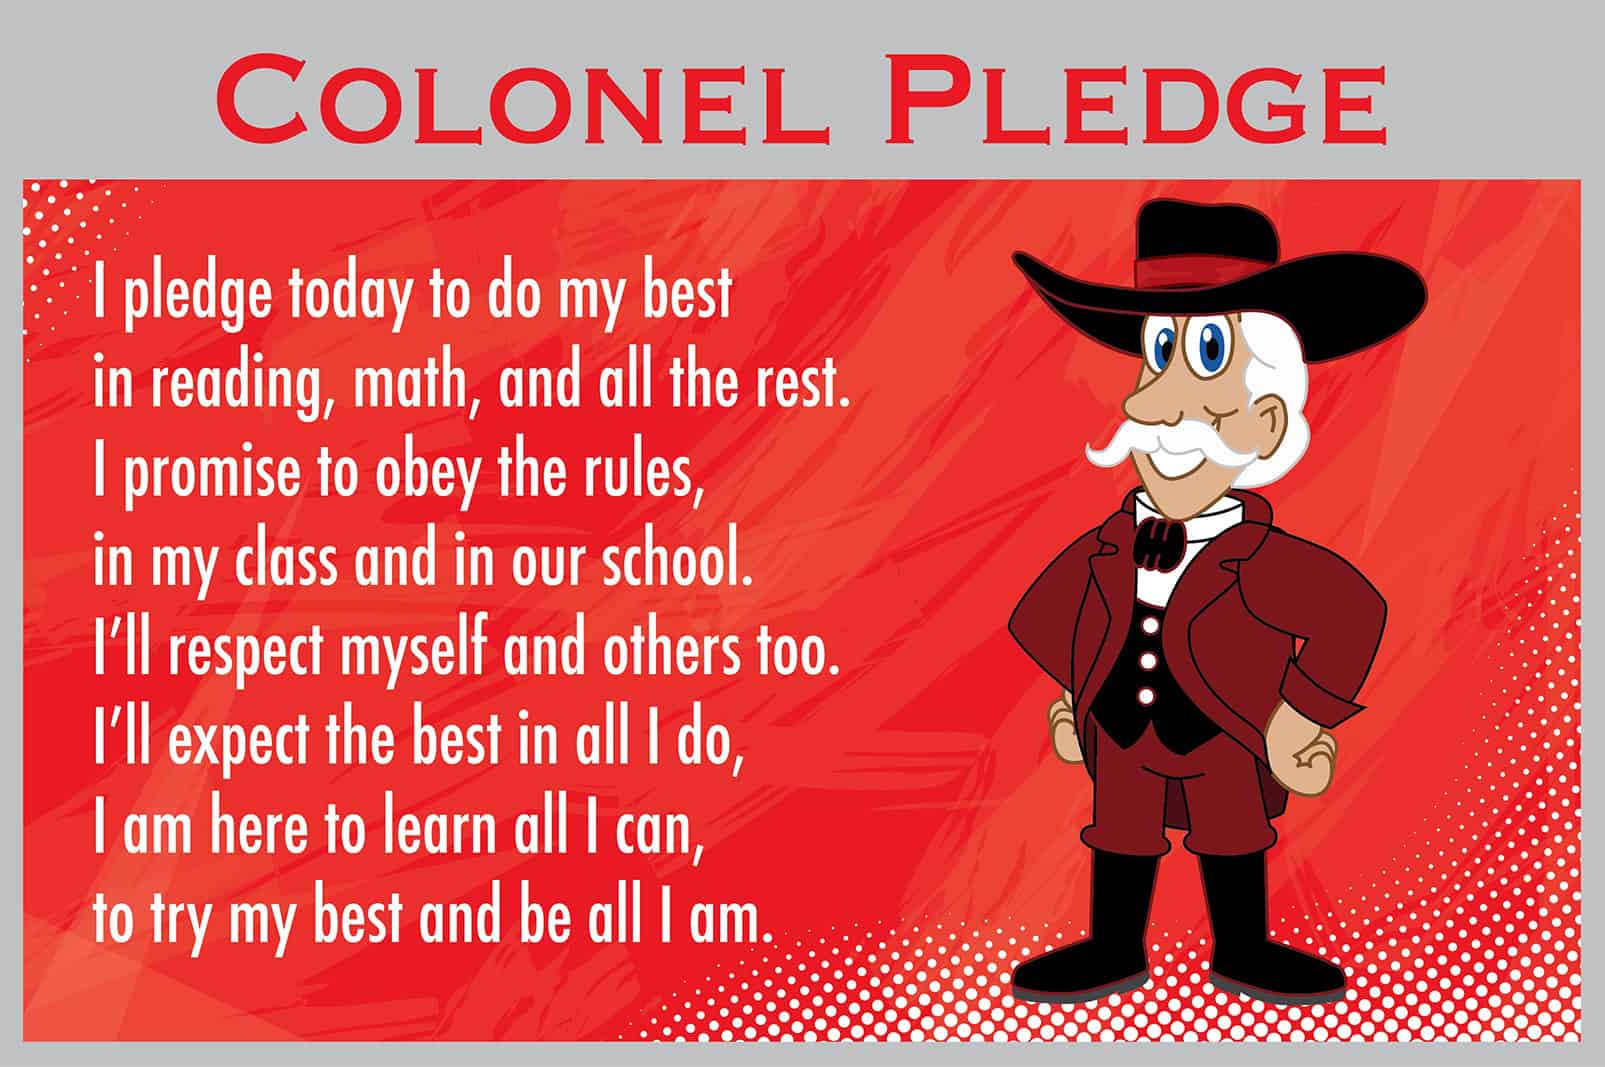 Pledge-colonel